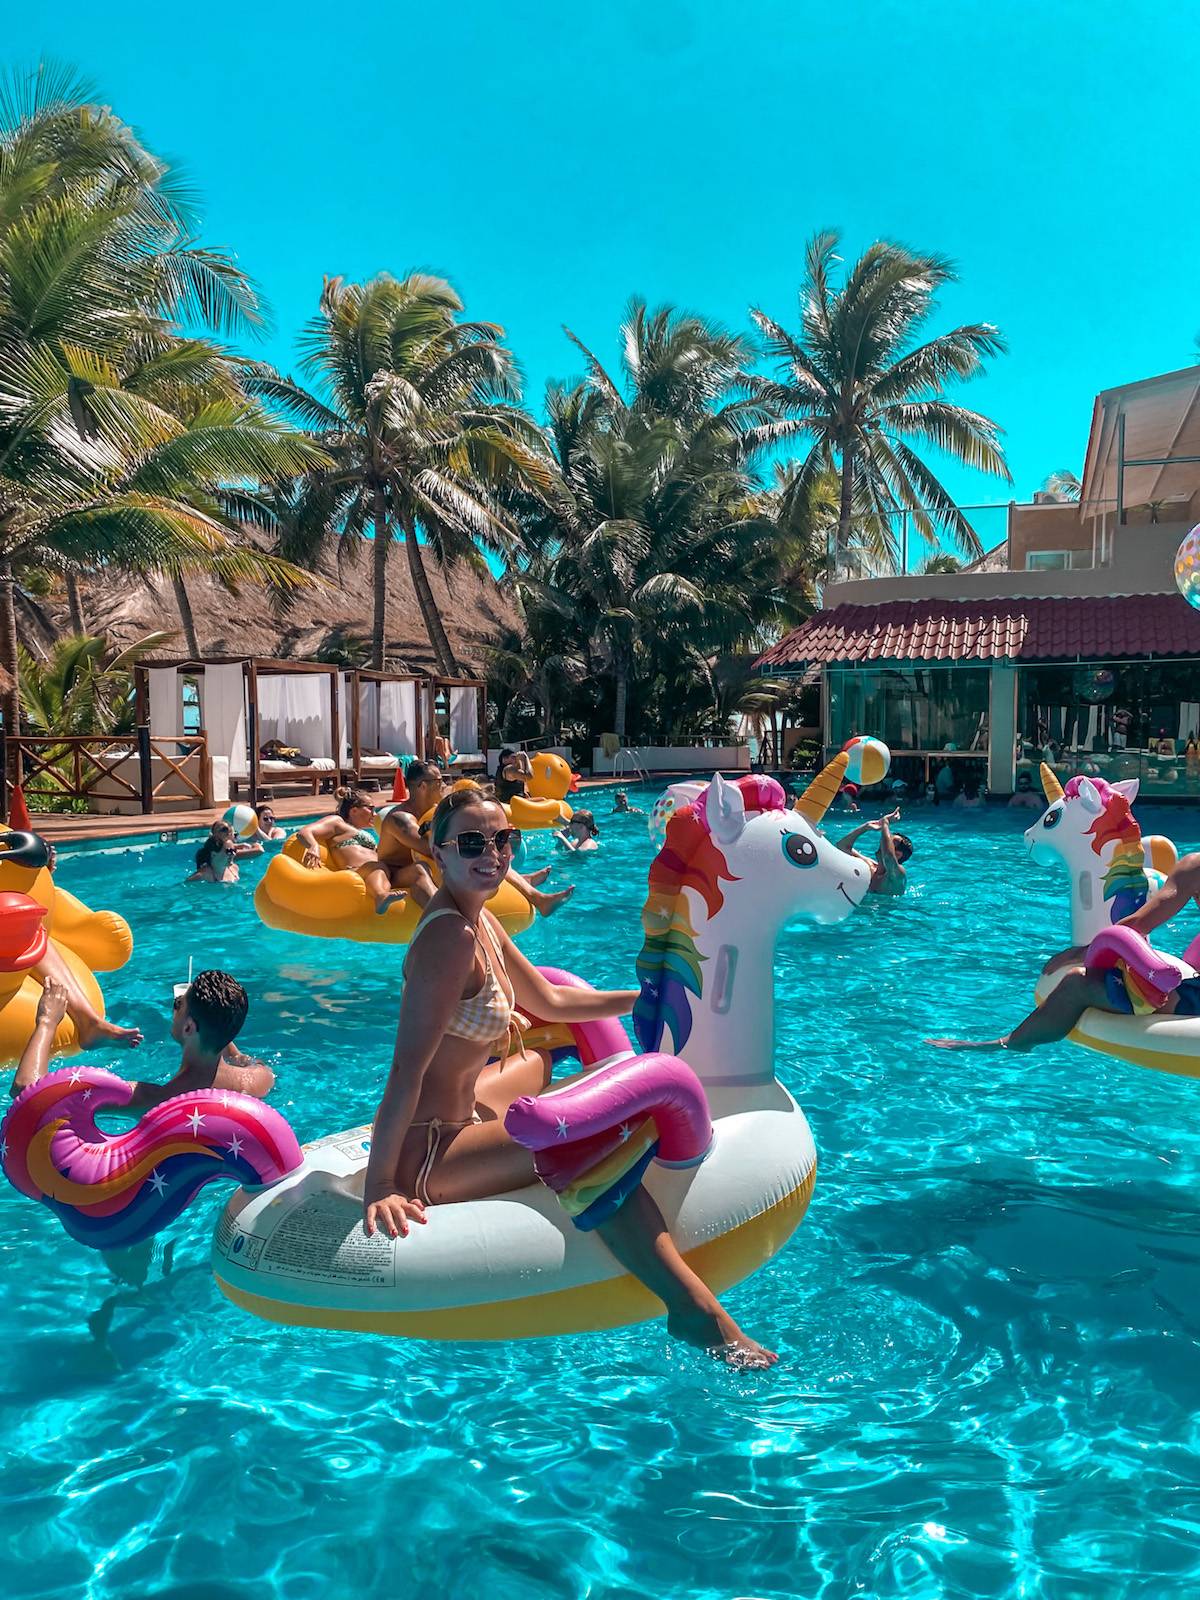 Pool party at El Dorado Seaside Suites